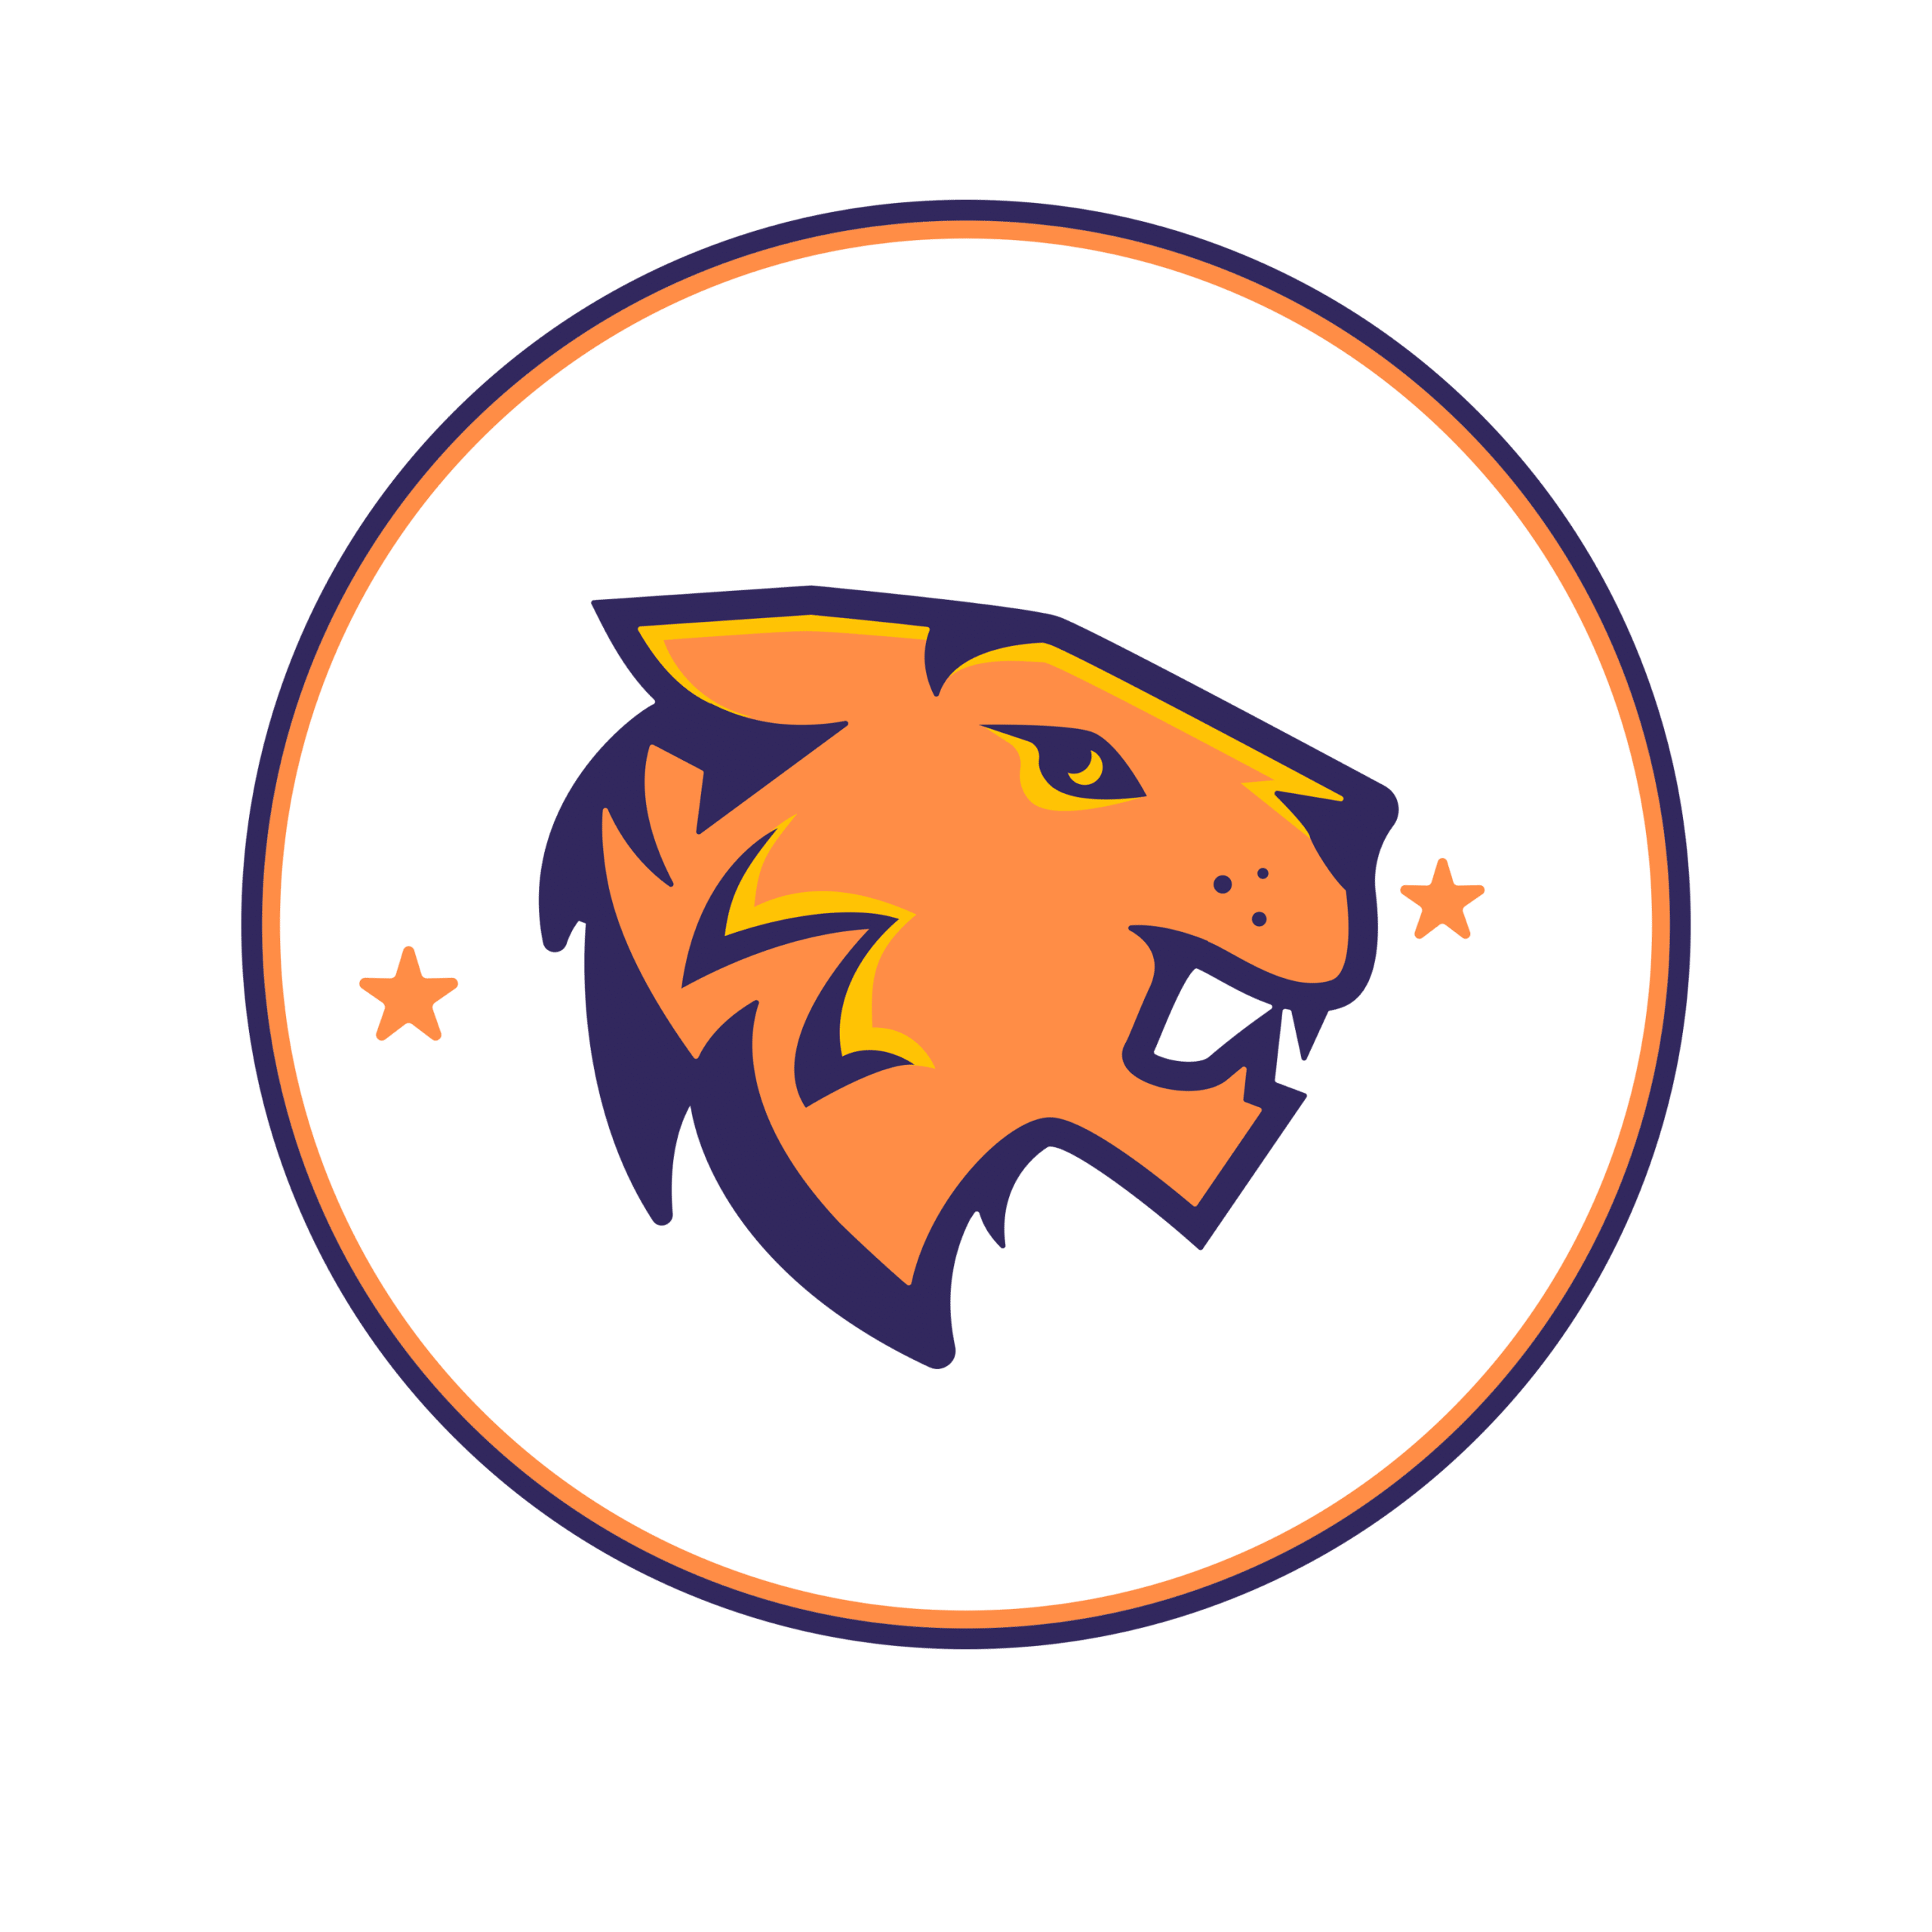 Mẫu logo áo bóng đá con Hổ tuổi Sửu màu tím cam